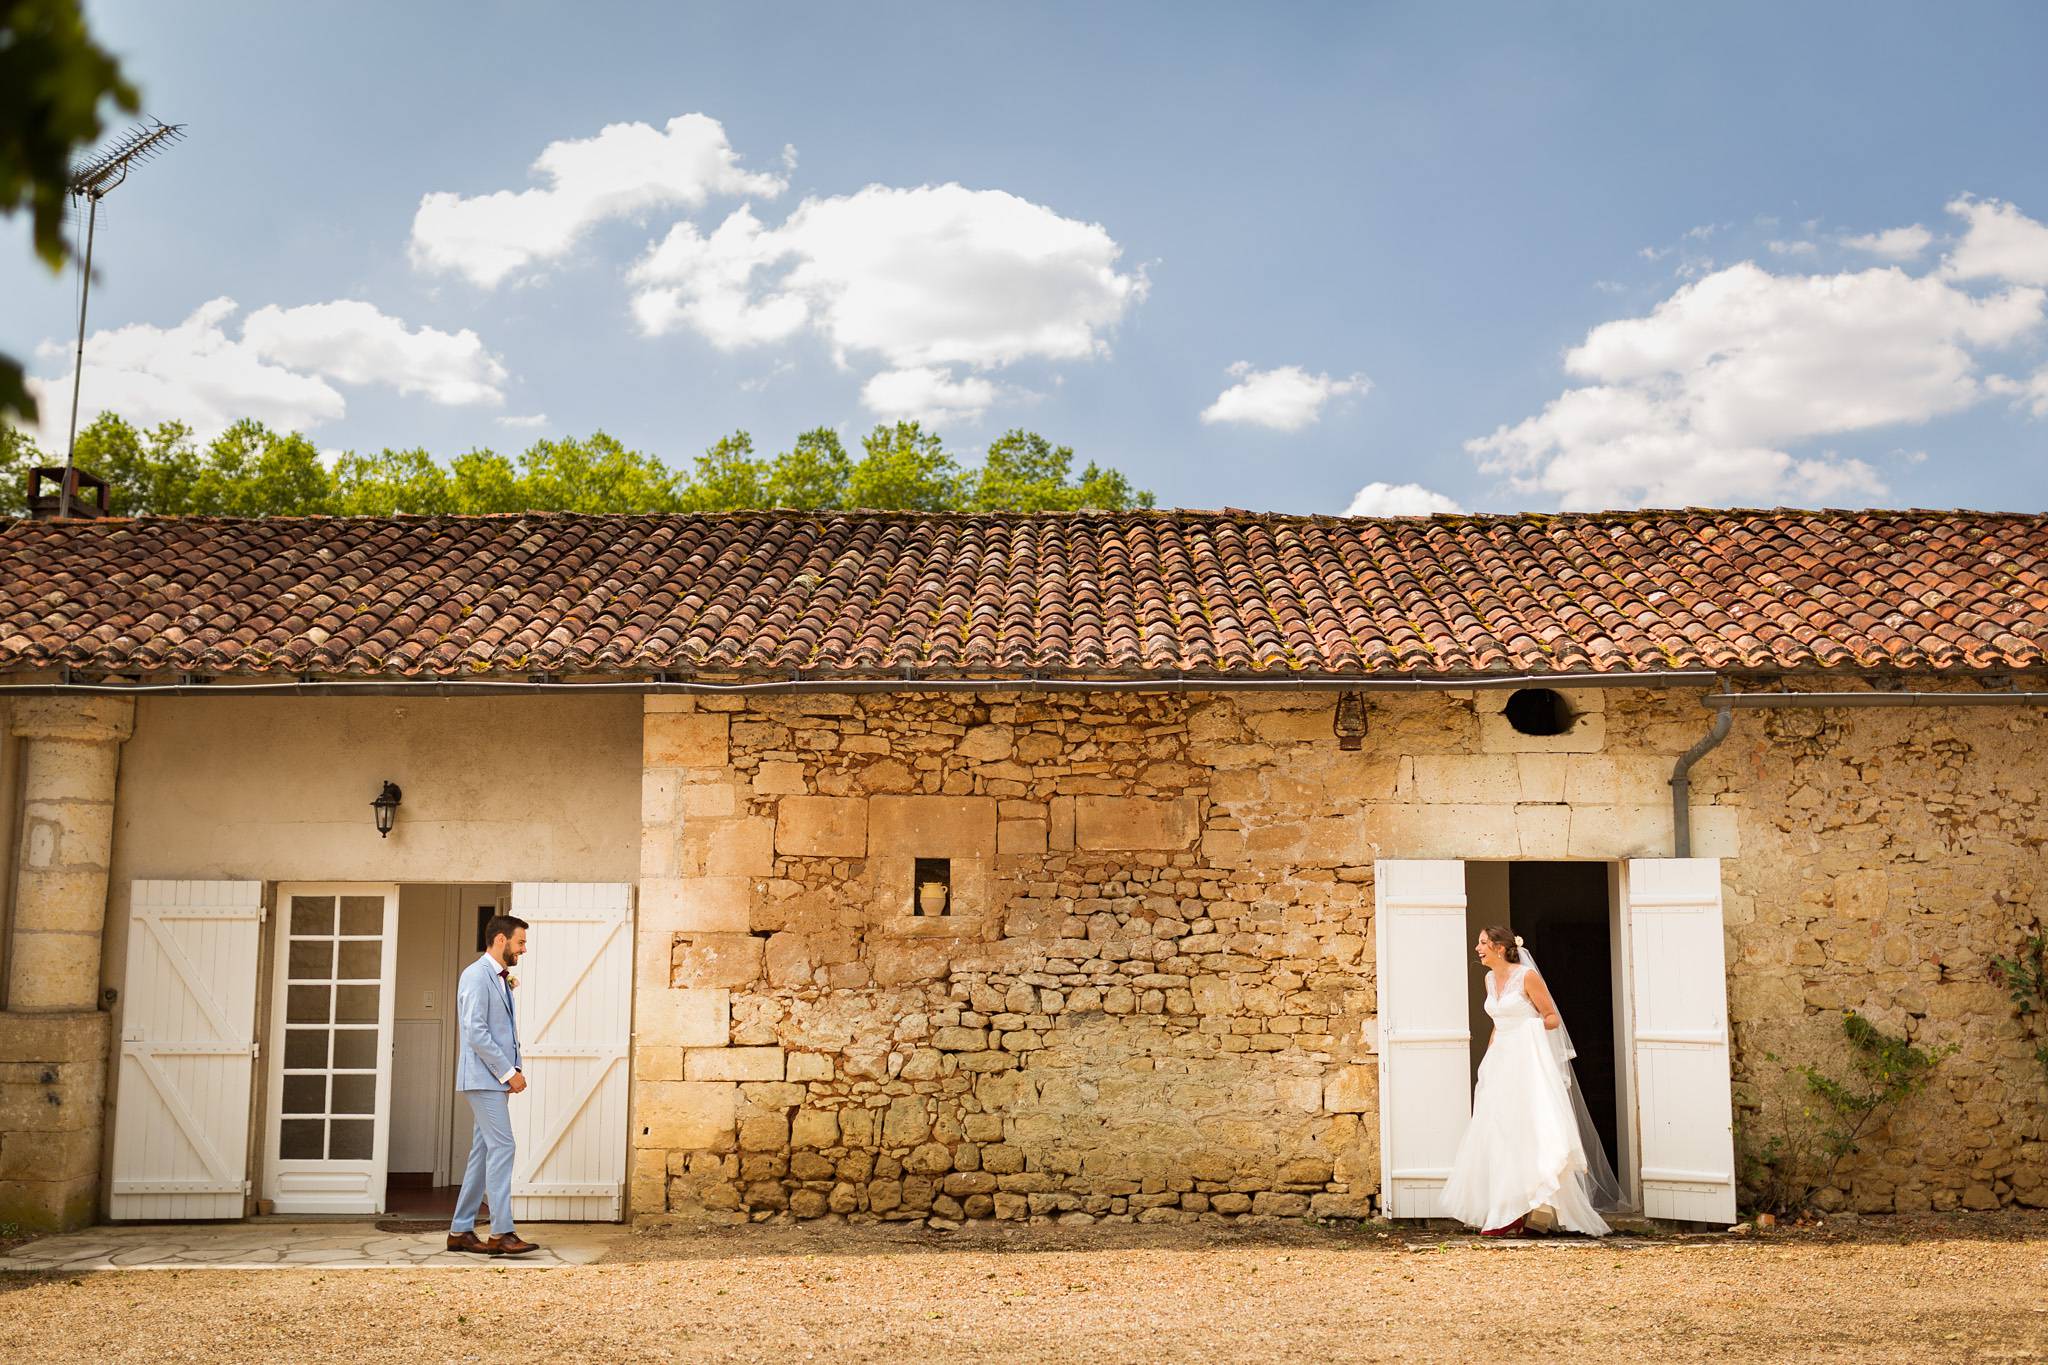 Reportage photo du mariage au Domaine de Montplaisir à Condat-sur-Trincou en Dordogne, avec Valérie et Adrien, sur le thème de l'aventure.